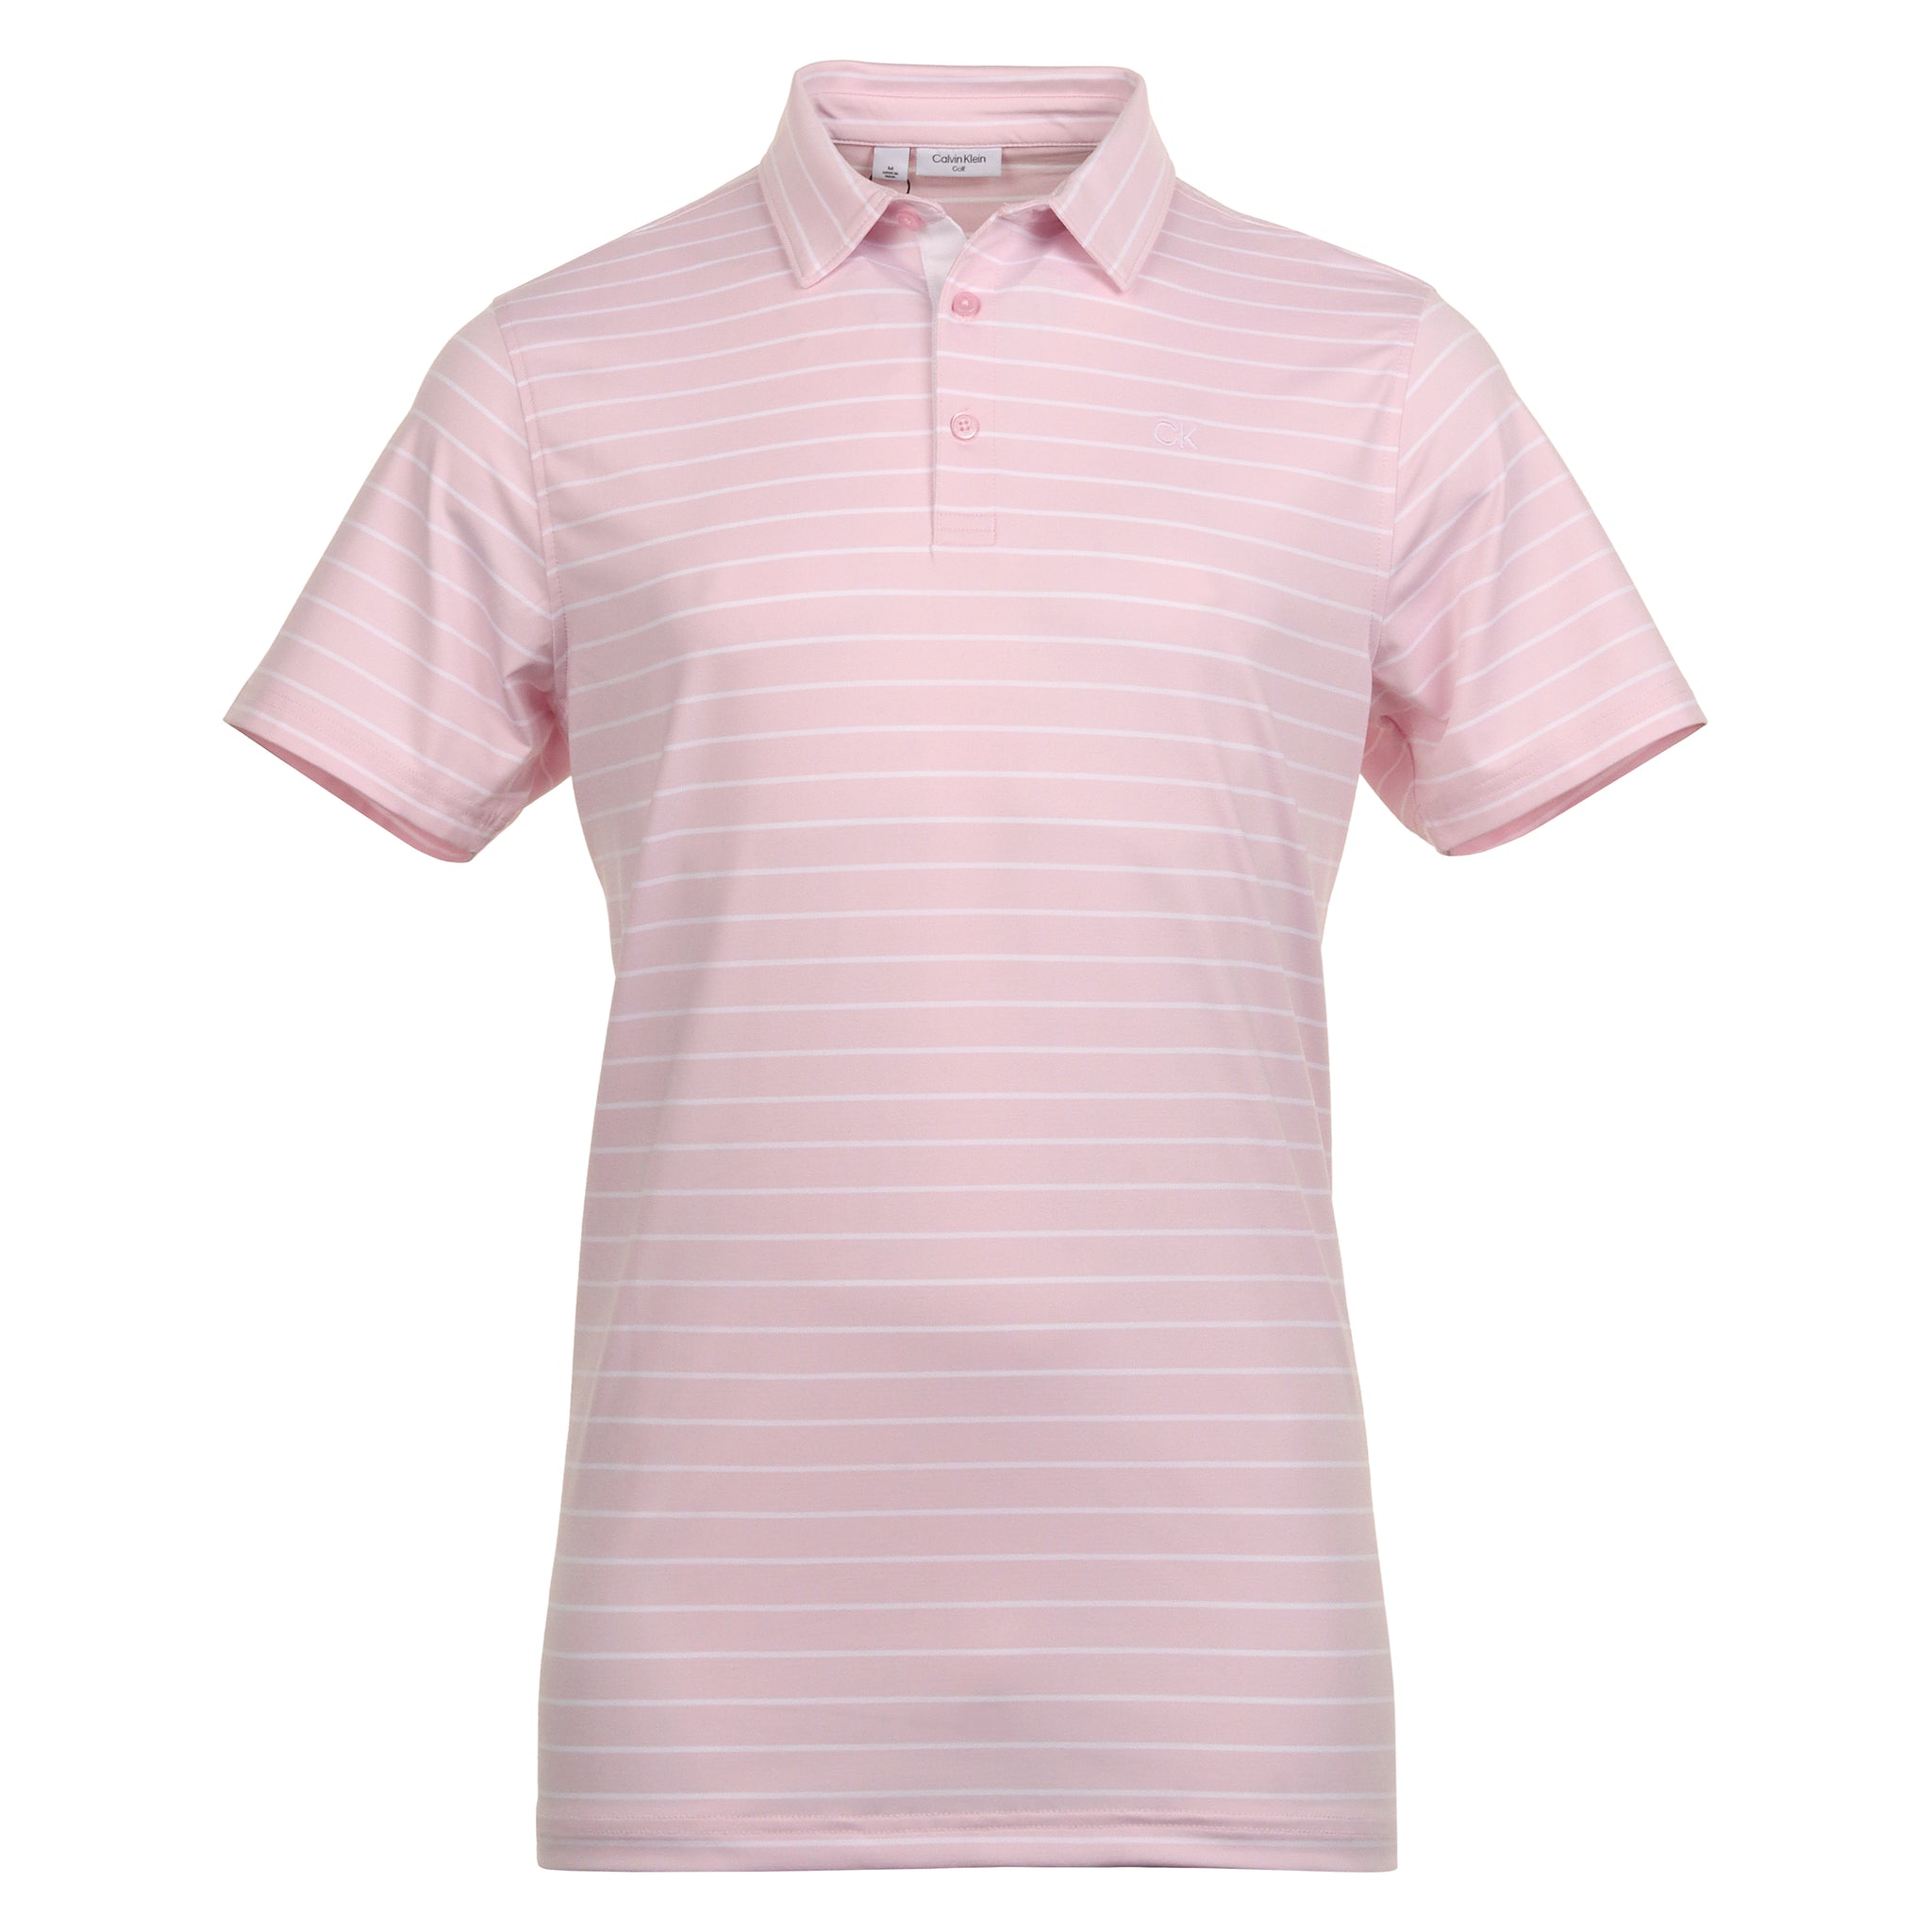 calvin-klein-golf-silverstone-shirt-ckms24887-pink-white